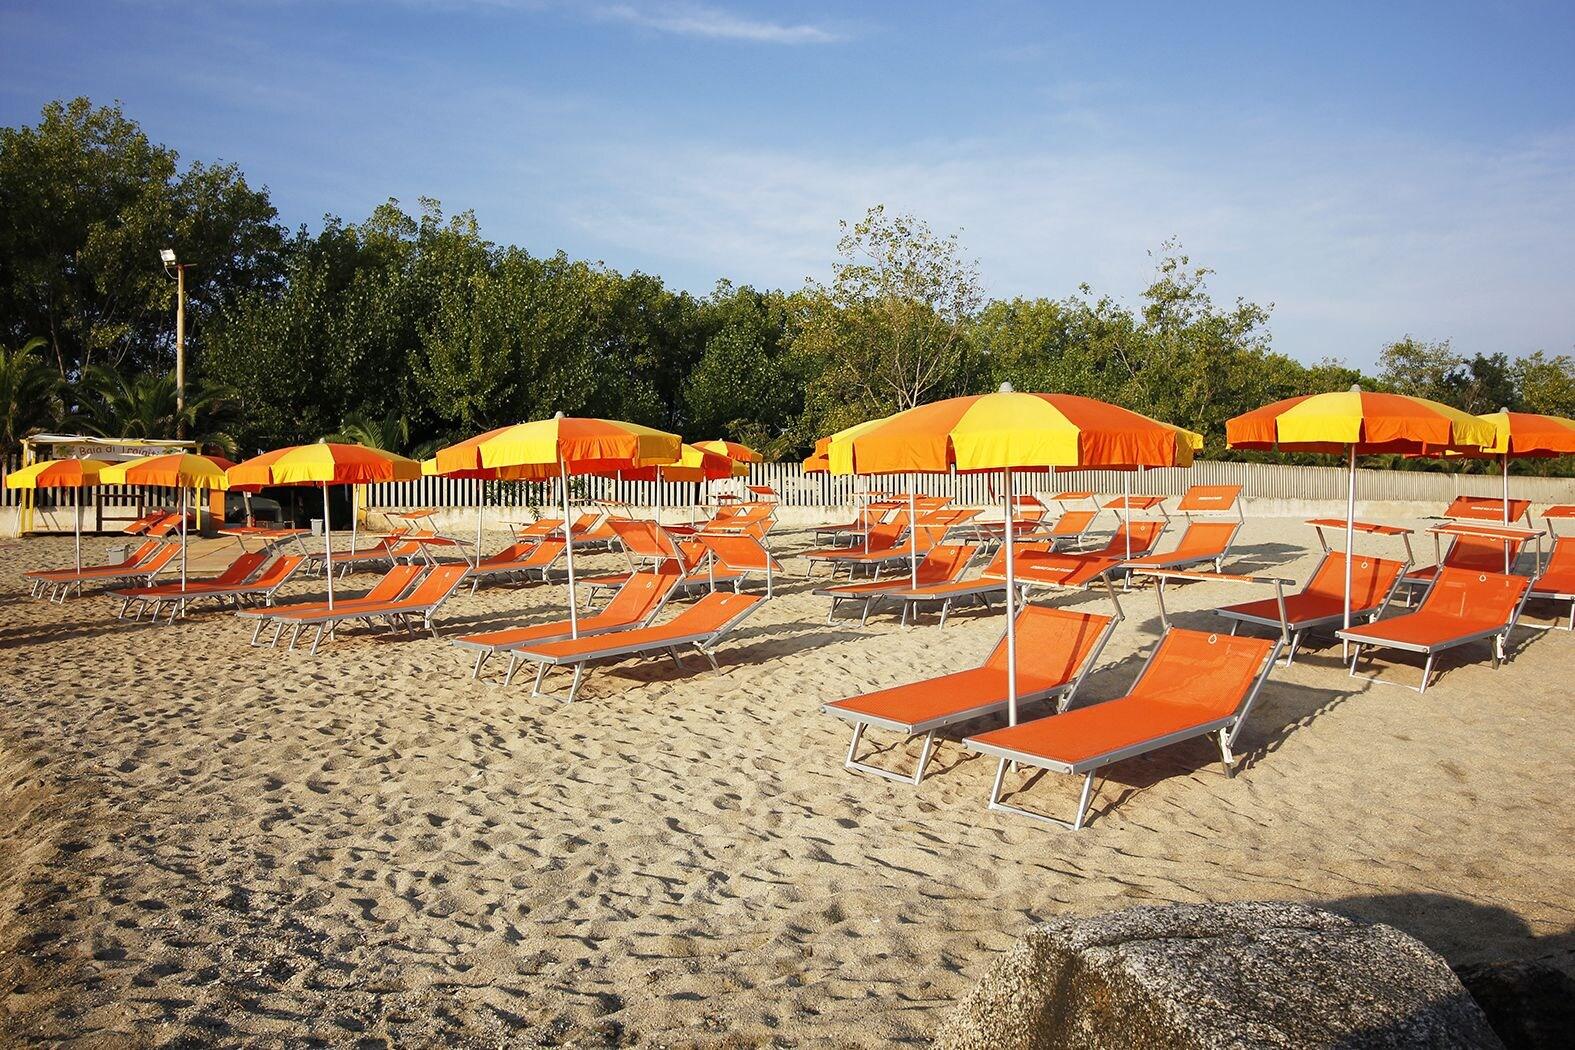 Photo of Spiaggia di Trainiti located in natural area